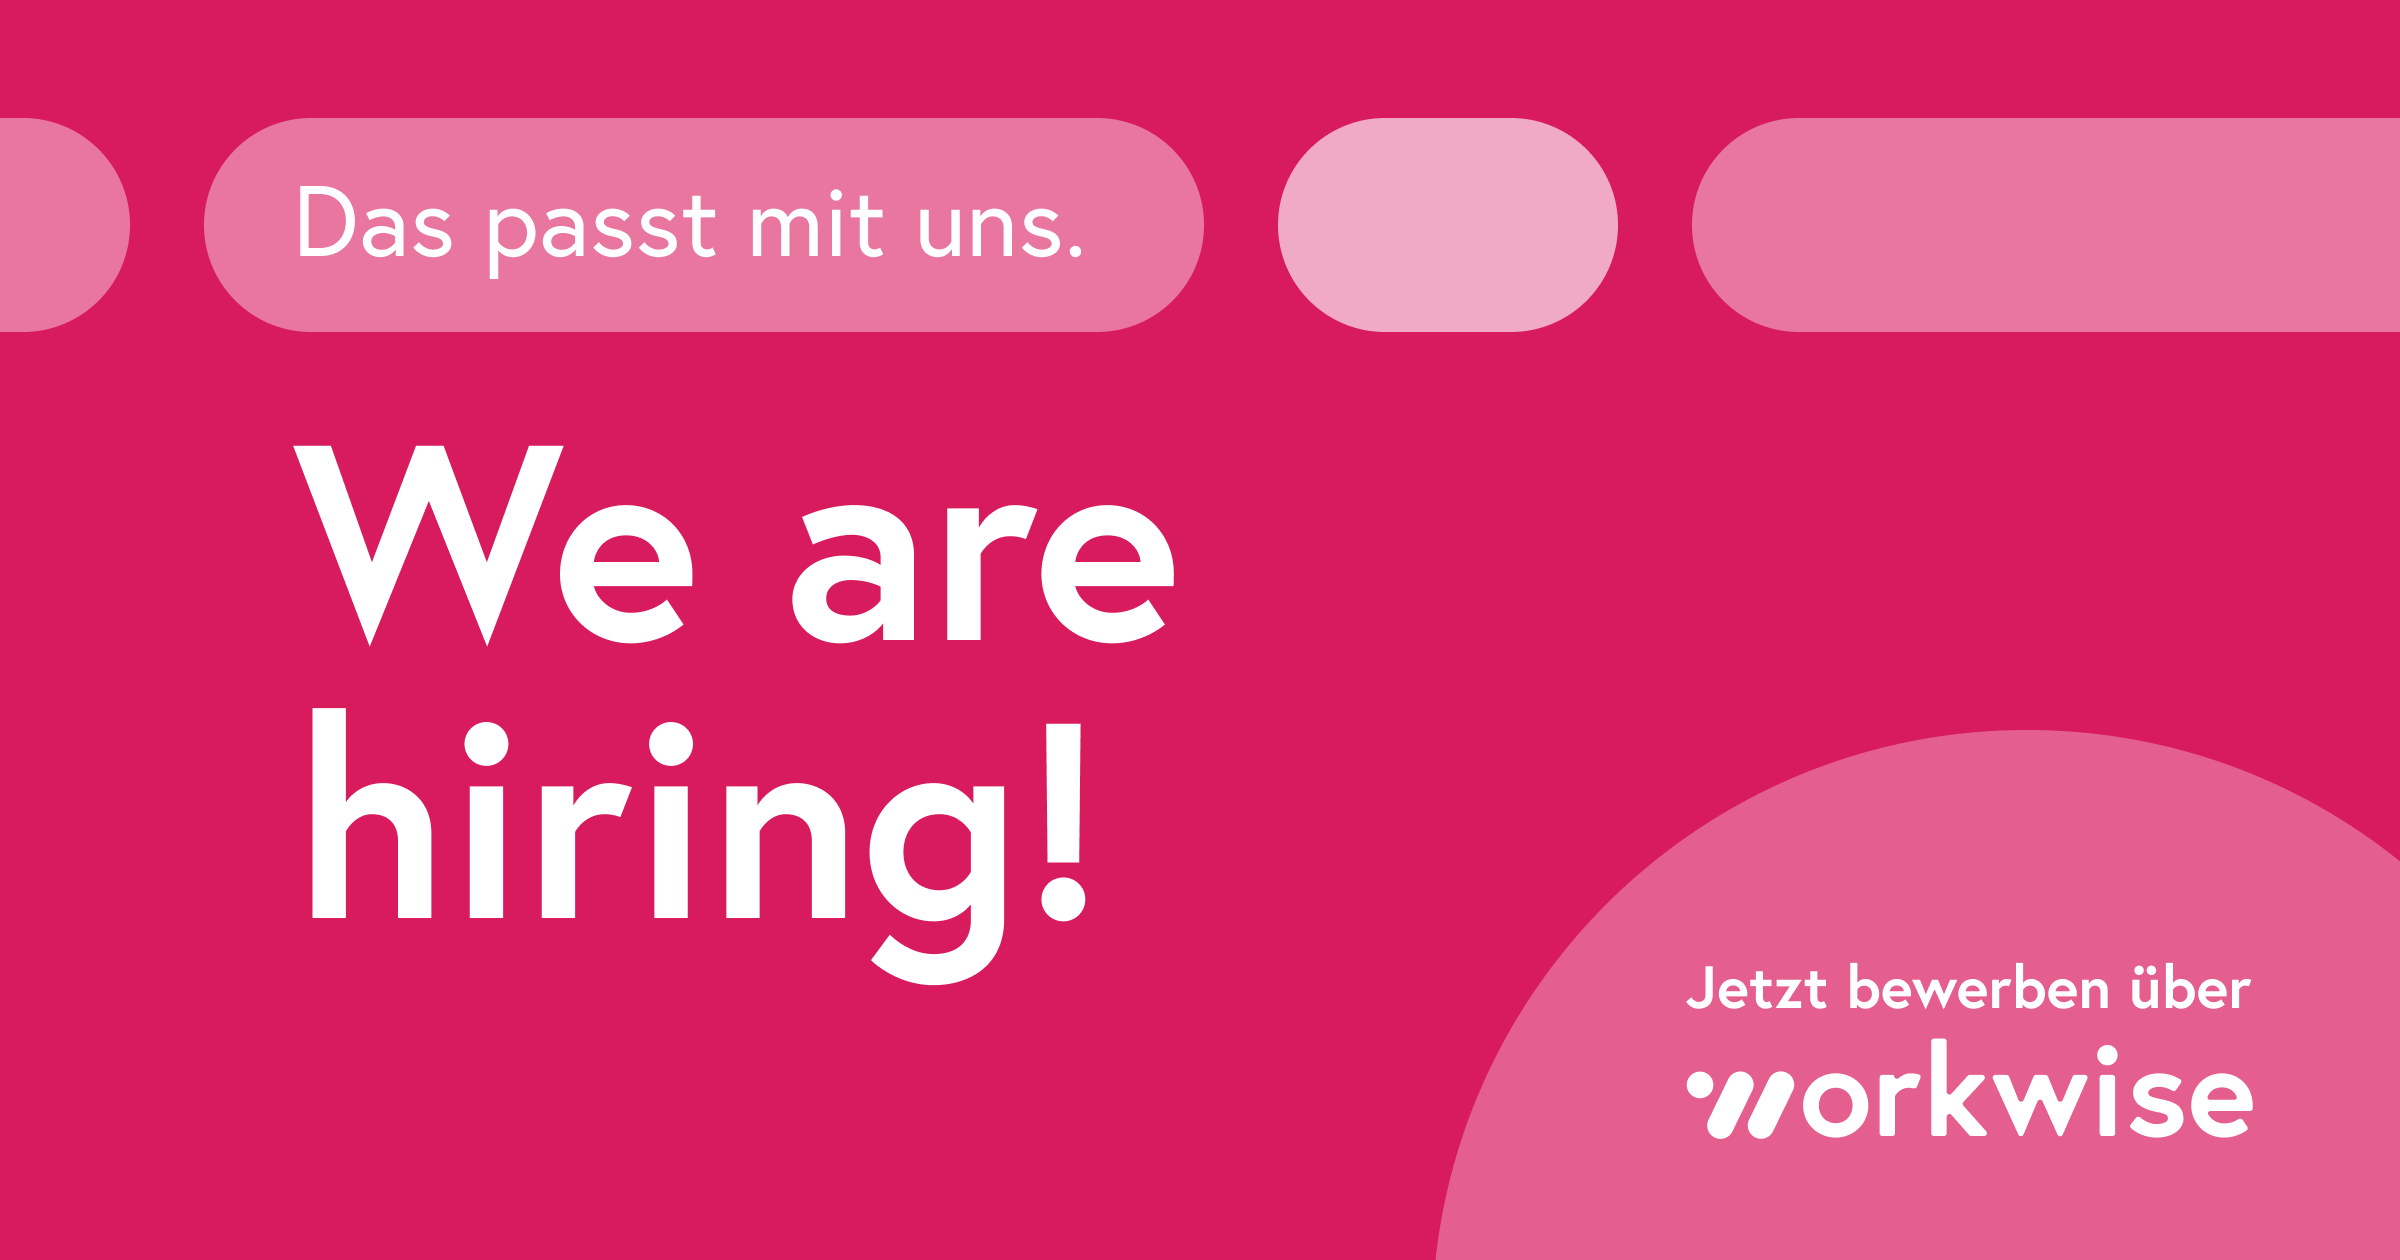 Key Account Management Jobs – Finde aktuelle Stellenangebote in Deutschland und bewirb dich ohne Anschreiben über Workwise.